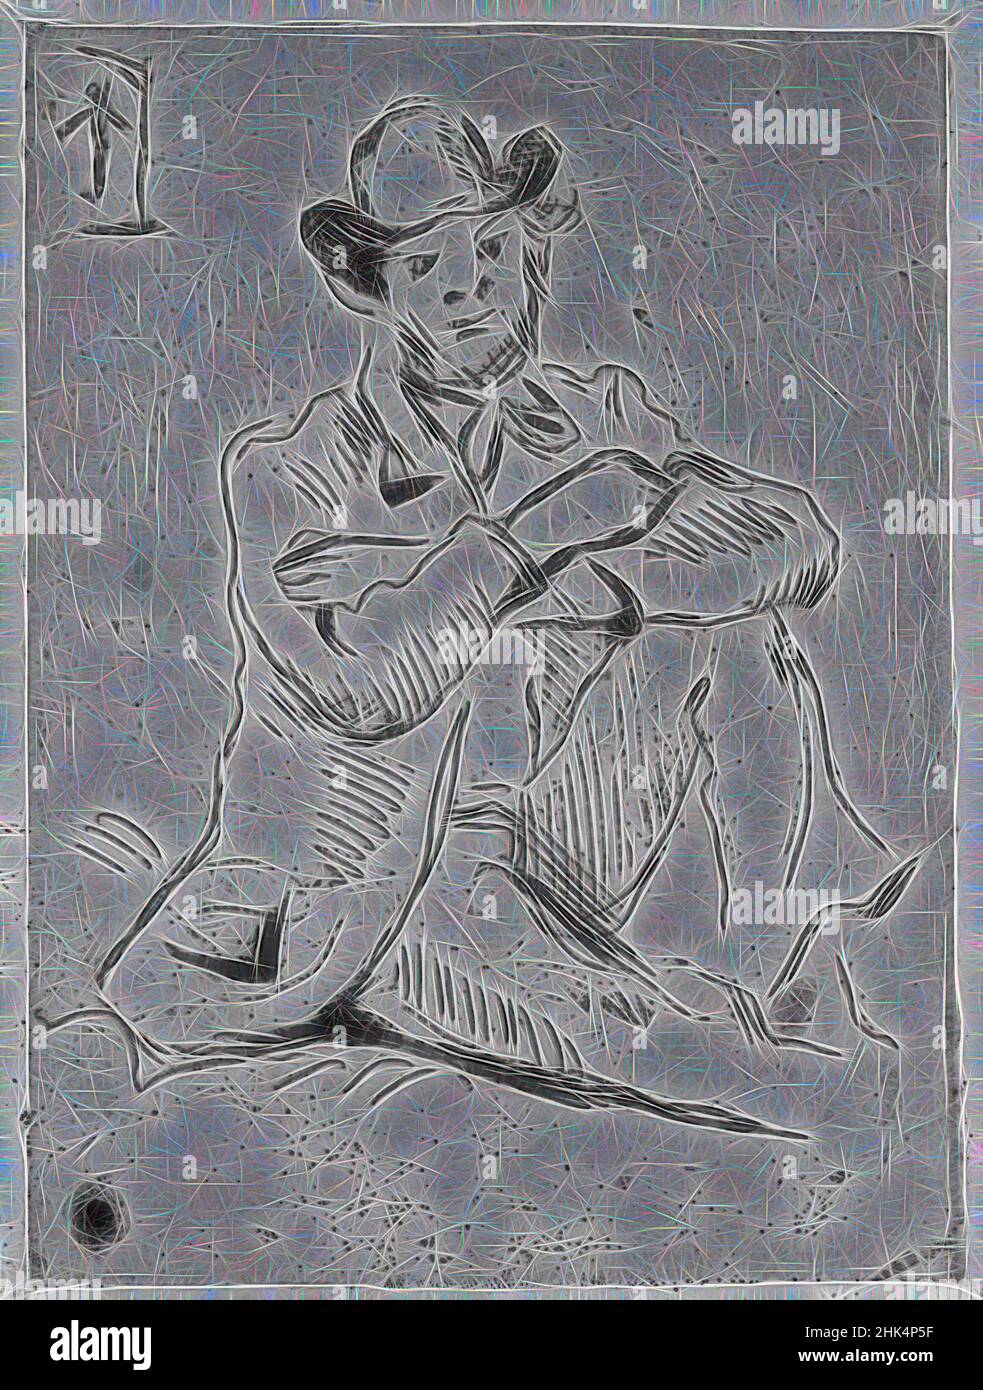 Inspiriert von Guillaumin am Erhängten, Guillaumin au pendu, Paul Cézanne, Französisch, 1839-1906, Radierung auf Büttenpapier, Frankreich, 1873, 6 1/8 x 4 3/4 Zoll, 15,6 x 12 cm, neu erfunden von Artotop. Klassische Kunst neu erfunden mit einem modernen Twist. Design von warmen fröhlichen Leuchten der Helligkeit und Lichtstrahl Strahlkraft. Fotografie inspiriert von Surrealismus und Futurismus, umarmt dynamische Energie der modernen Technologie, Bewegung, Geschwindigkeit und Kultur zu revolutionieren Stockfoto